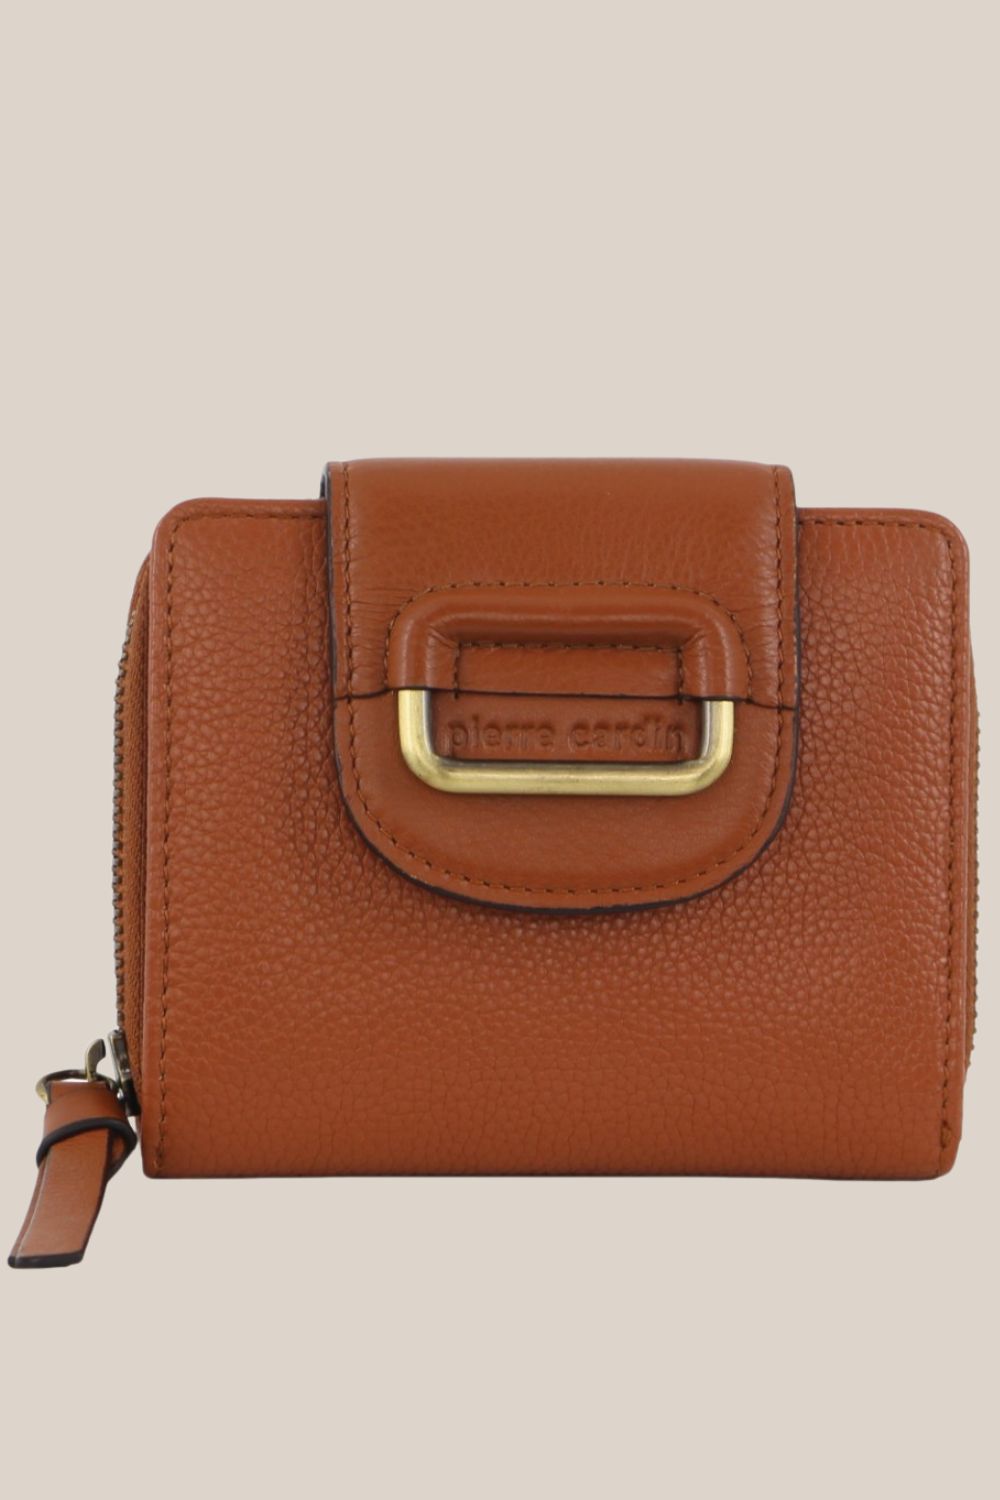 Pierre Cardin Ladies Leather Bi-Fold Wallet